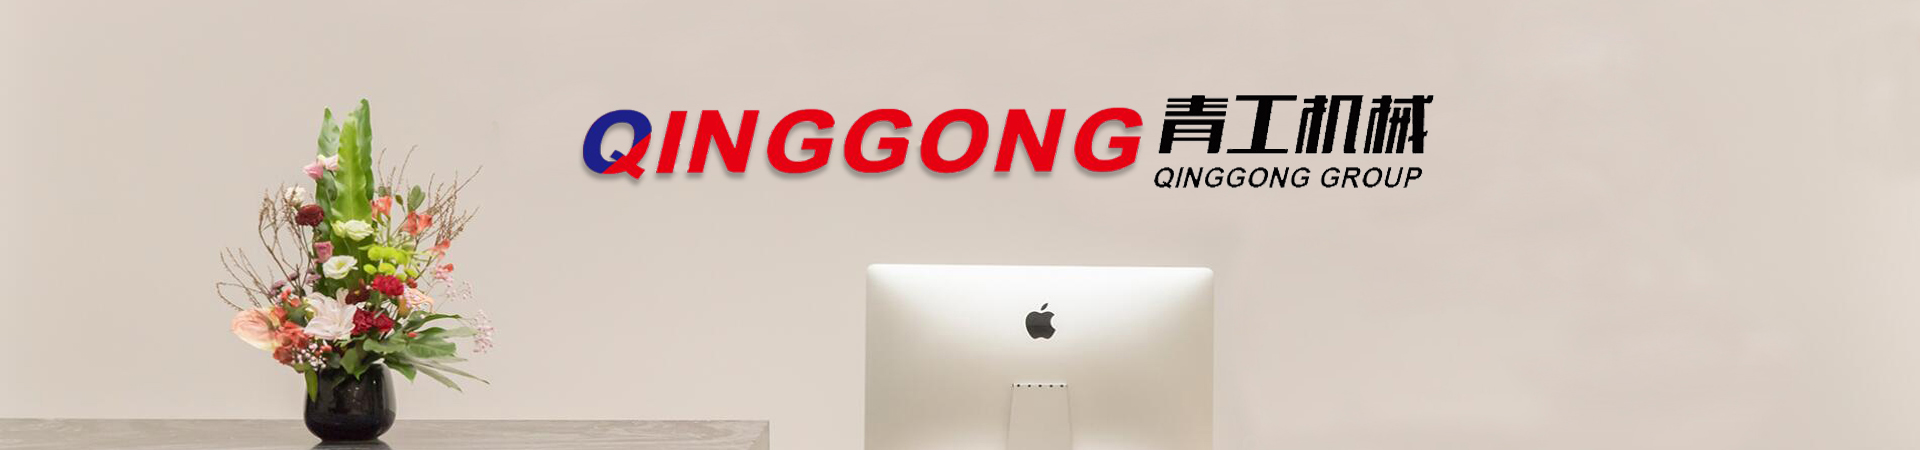 banner al companiei qionggong